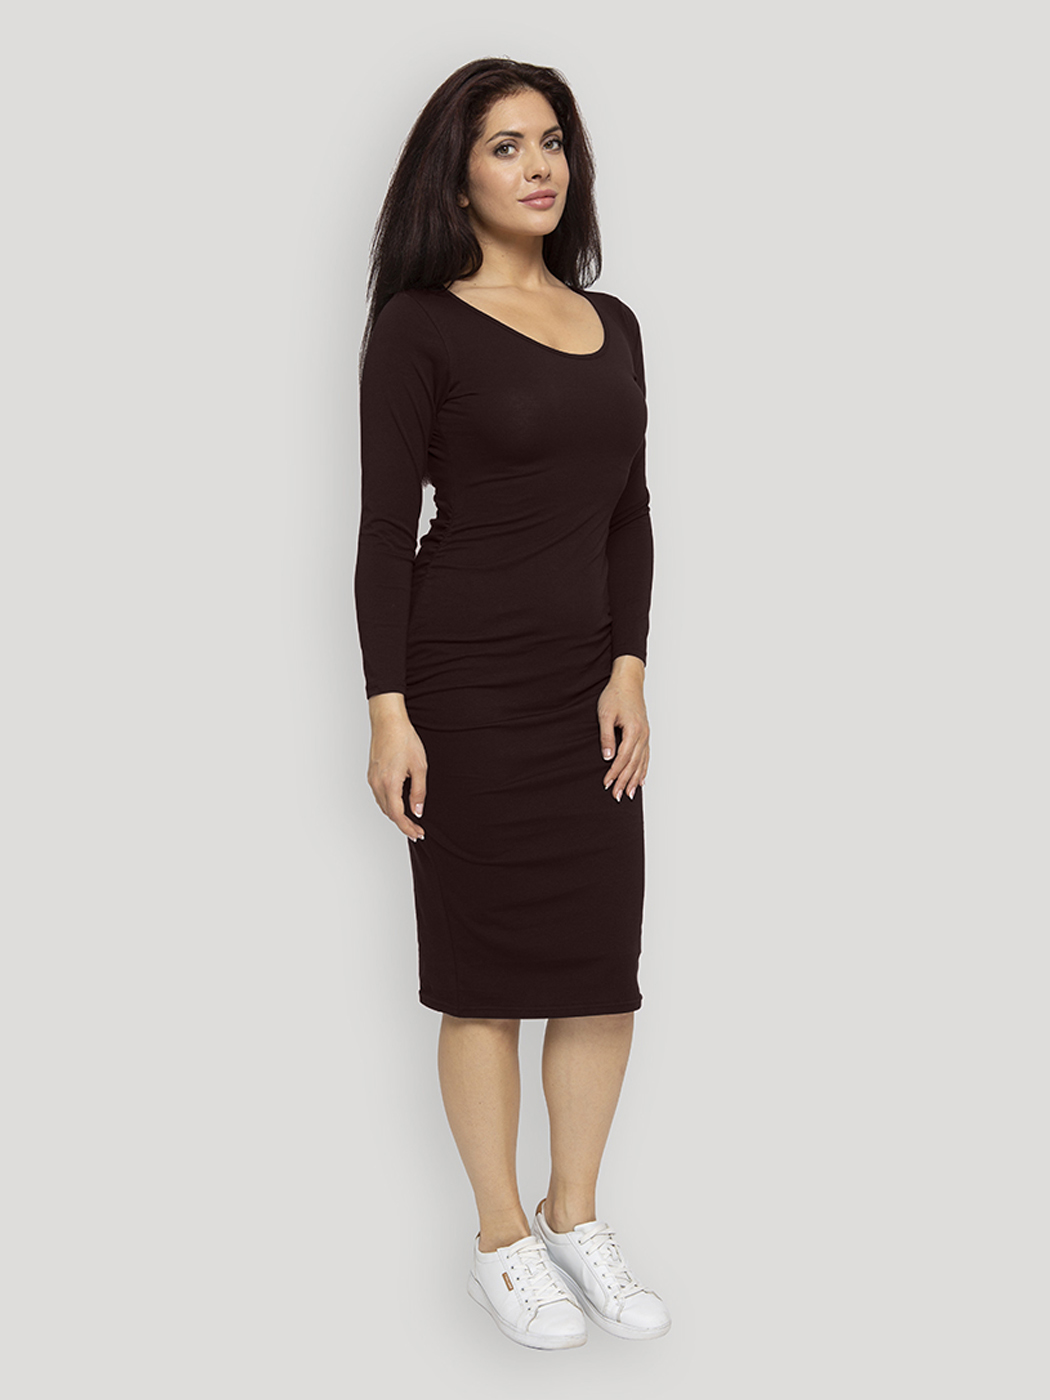 Платье для беременных женское Lunarable kelb005_ коричневое 2XL